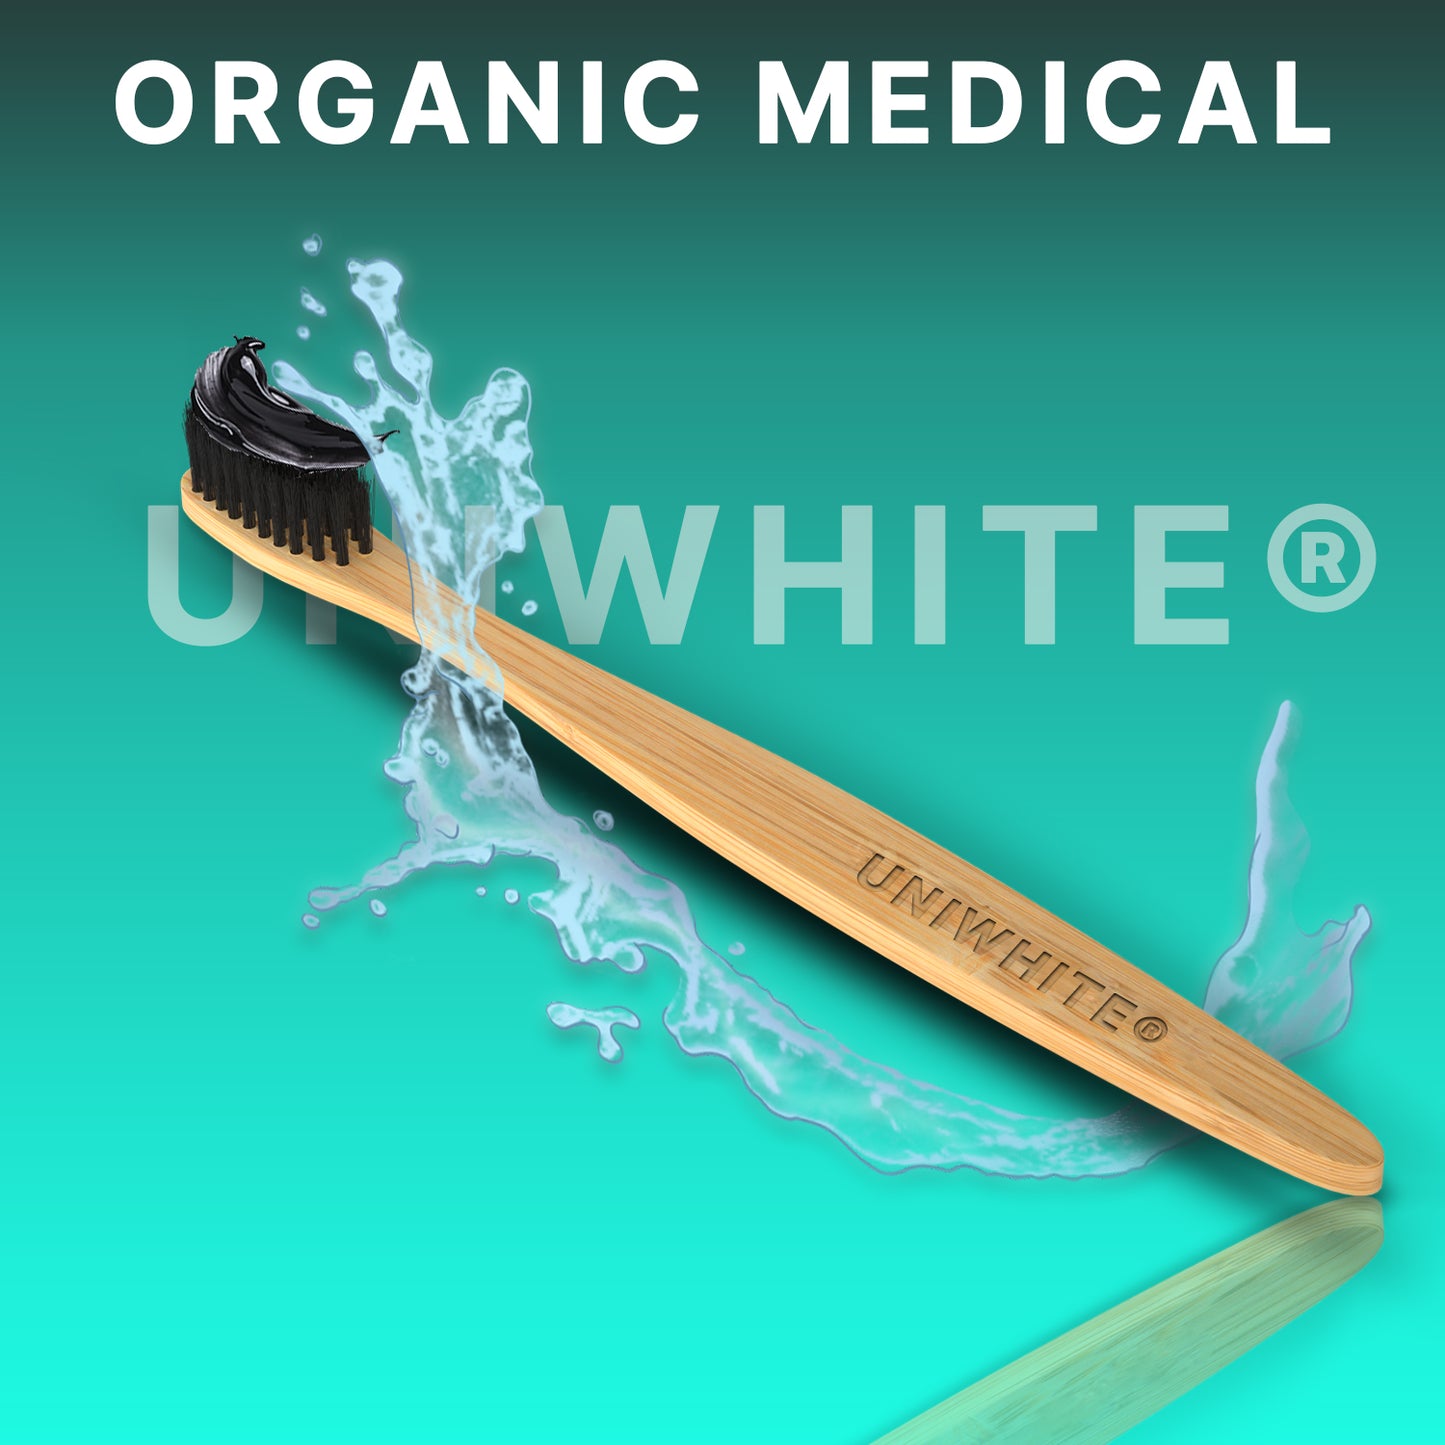 UNIWHITE® Organic Medical Bamboo Toothbrush